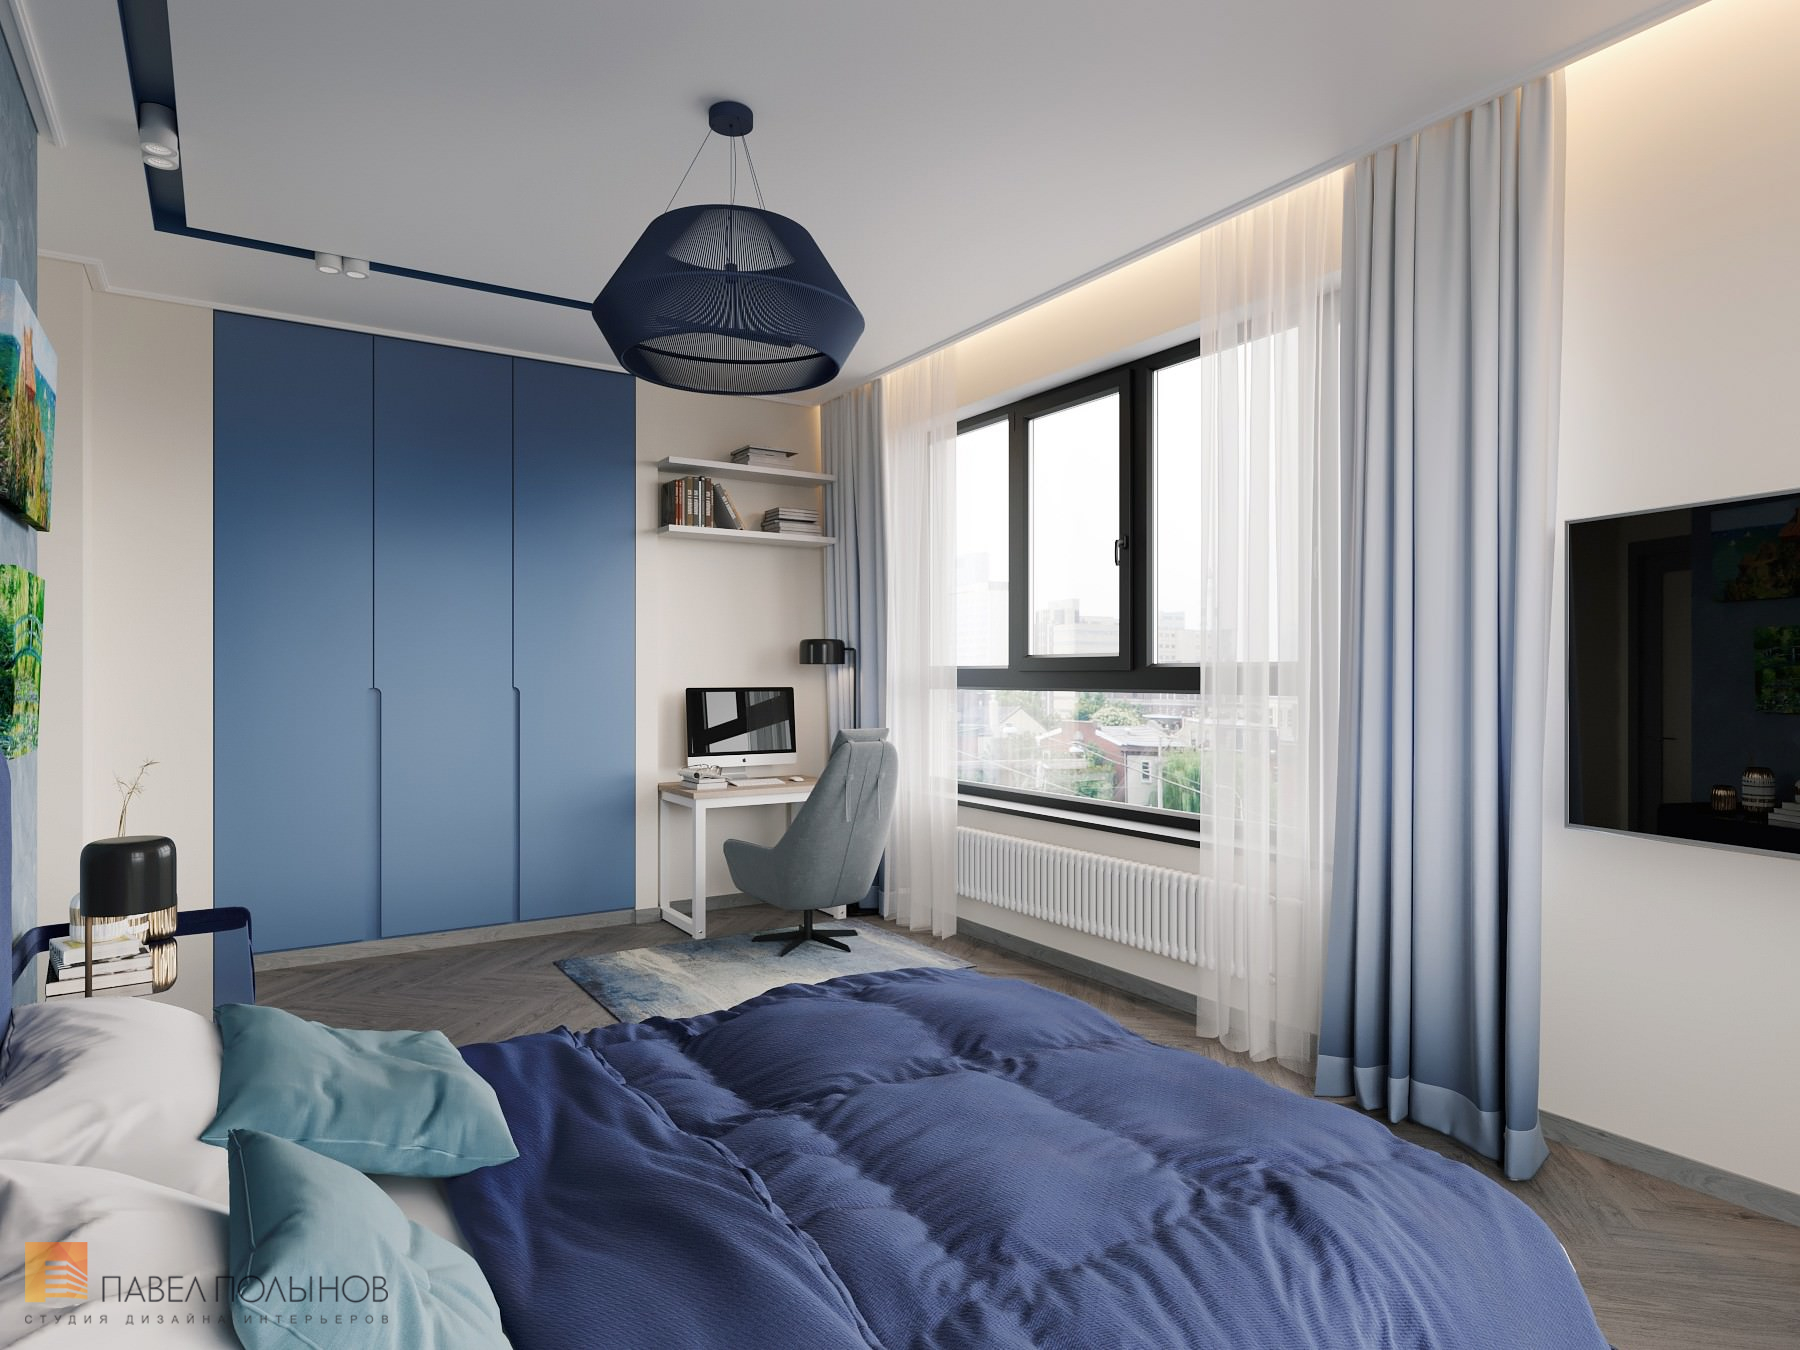 Фото интерьер спальни из проекта «Интерьер квартиры в скандинавском стиле, ЖК «Silver», 146 кв.м.»